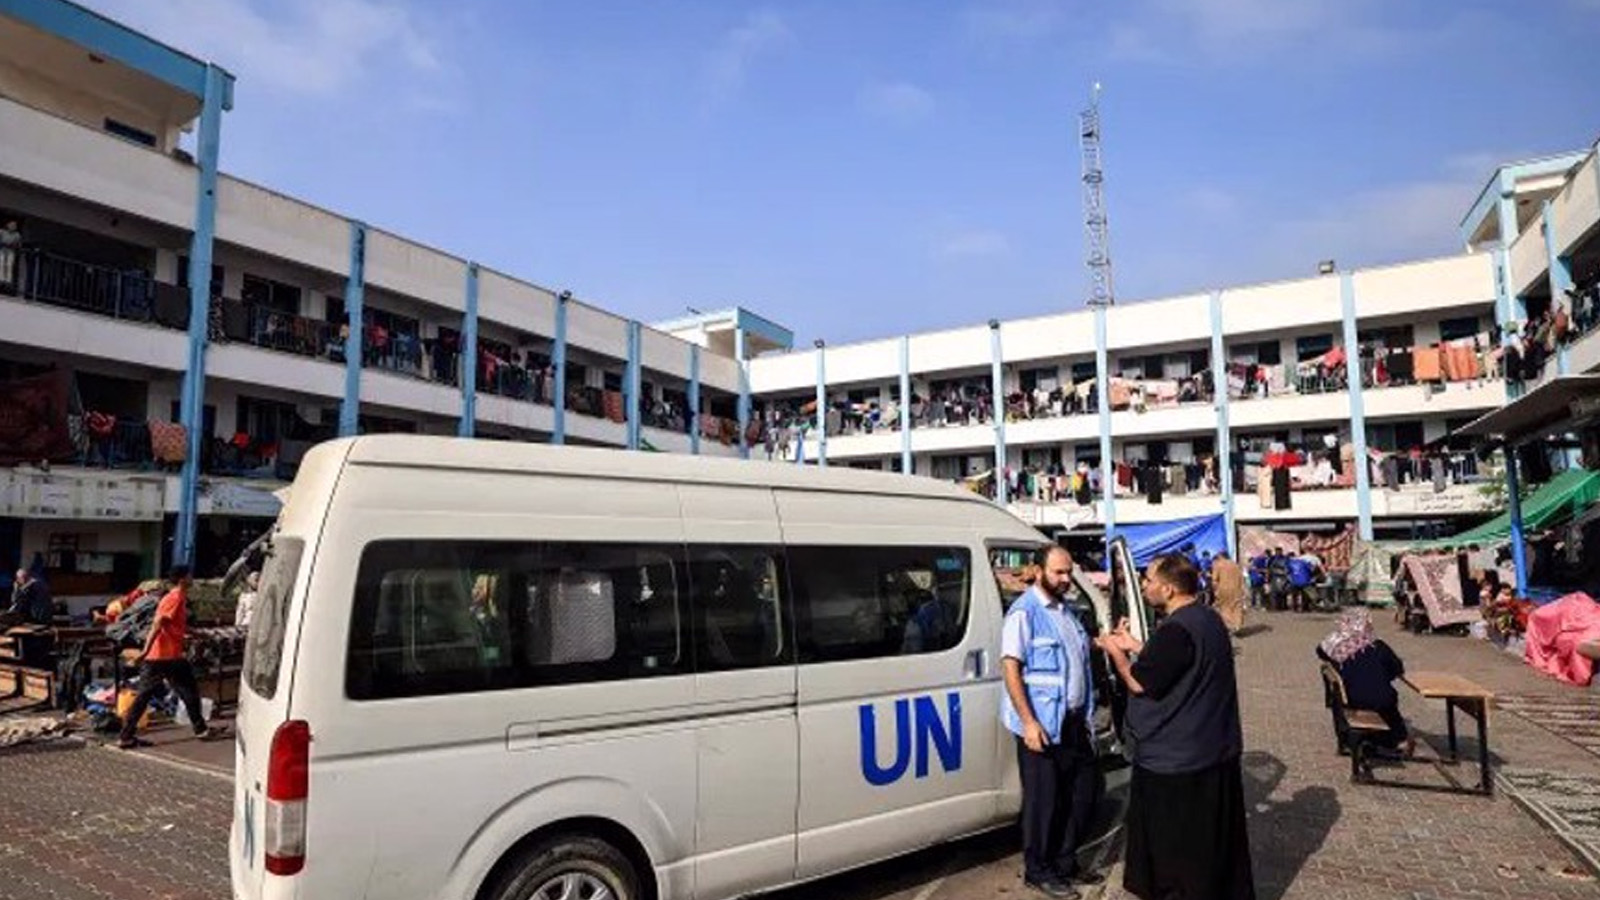 مدرسة تديرها الأمم المتحدة في خان يونس. وهي واحدة من العديد من المدارس التي تم تحويلها إلى ملاجئ للفلسطينيين الذين شردتهم الحرب الإسرائيلية في غزة.